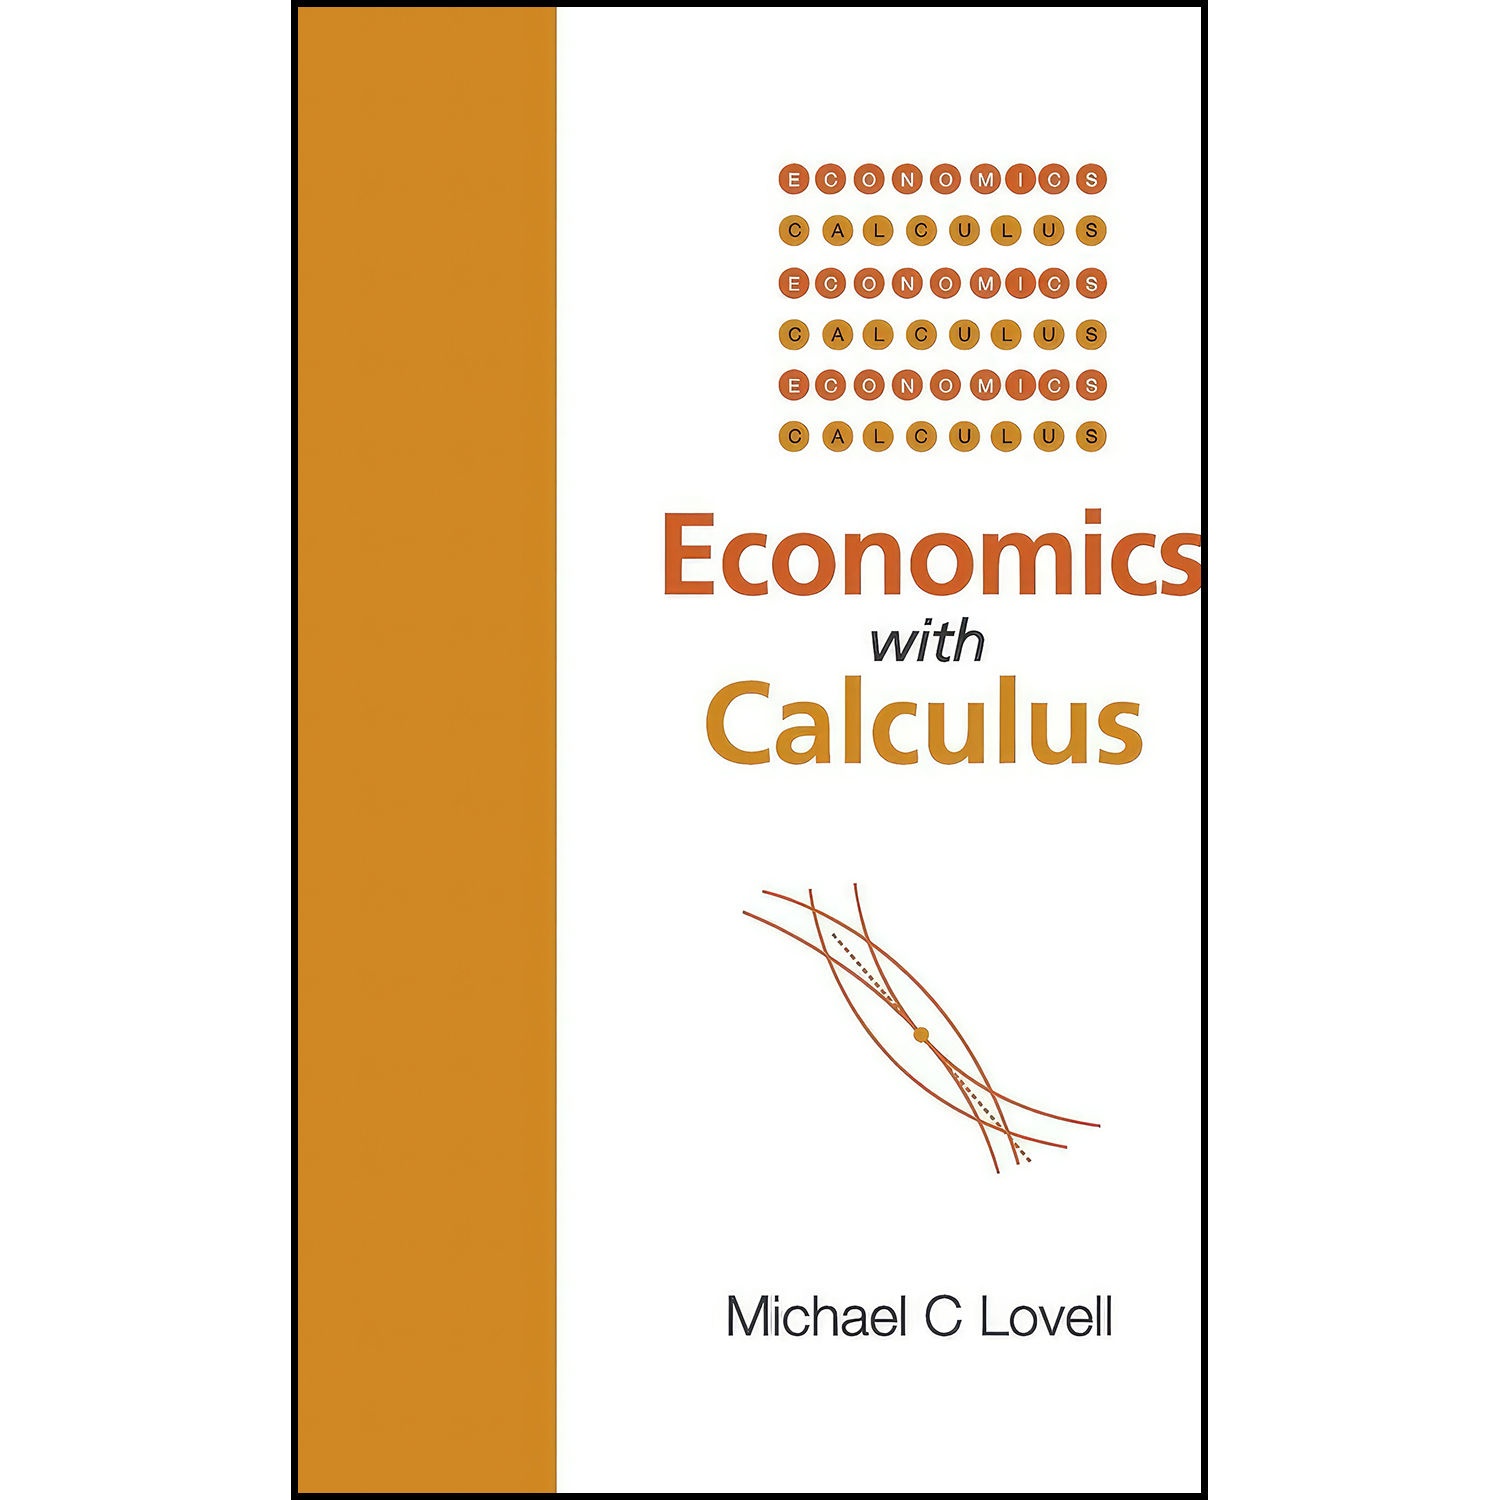 کتاب ECONOMICS WITH CALCULUS اثر Michael C. Lovell انتشارات World Scientific Publishing Company